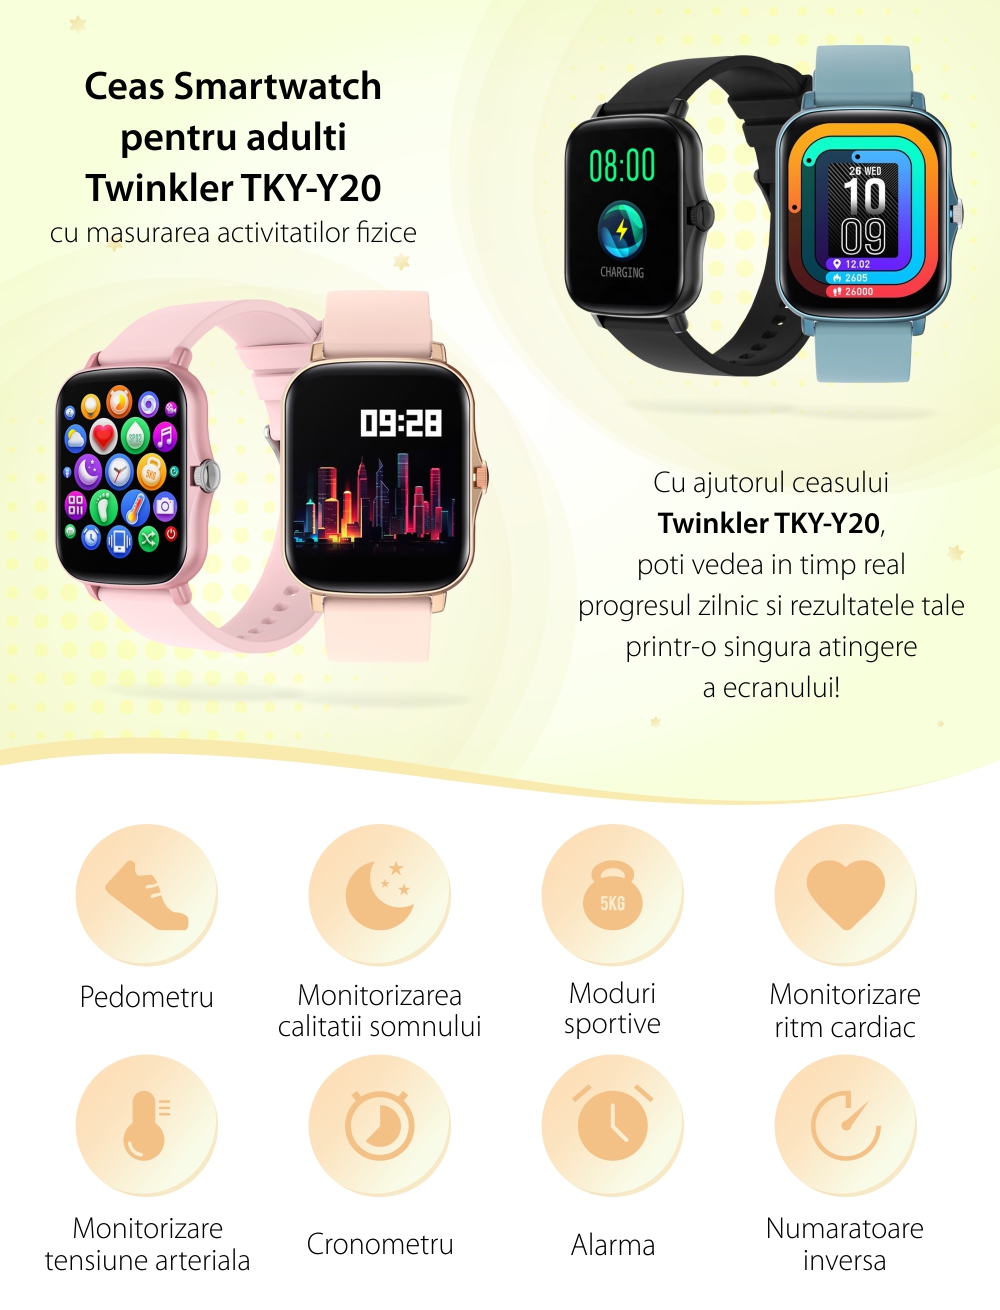 Ceas Smartwatch TKY-Y20, Negru, Cadran personalizat, Monitorizare somnului, Tensiune arteriala, Ritm cardiac, Cronometru, Alarma